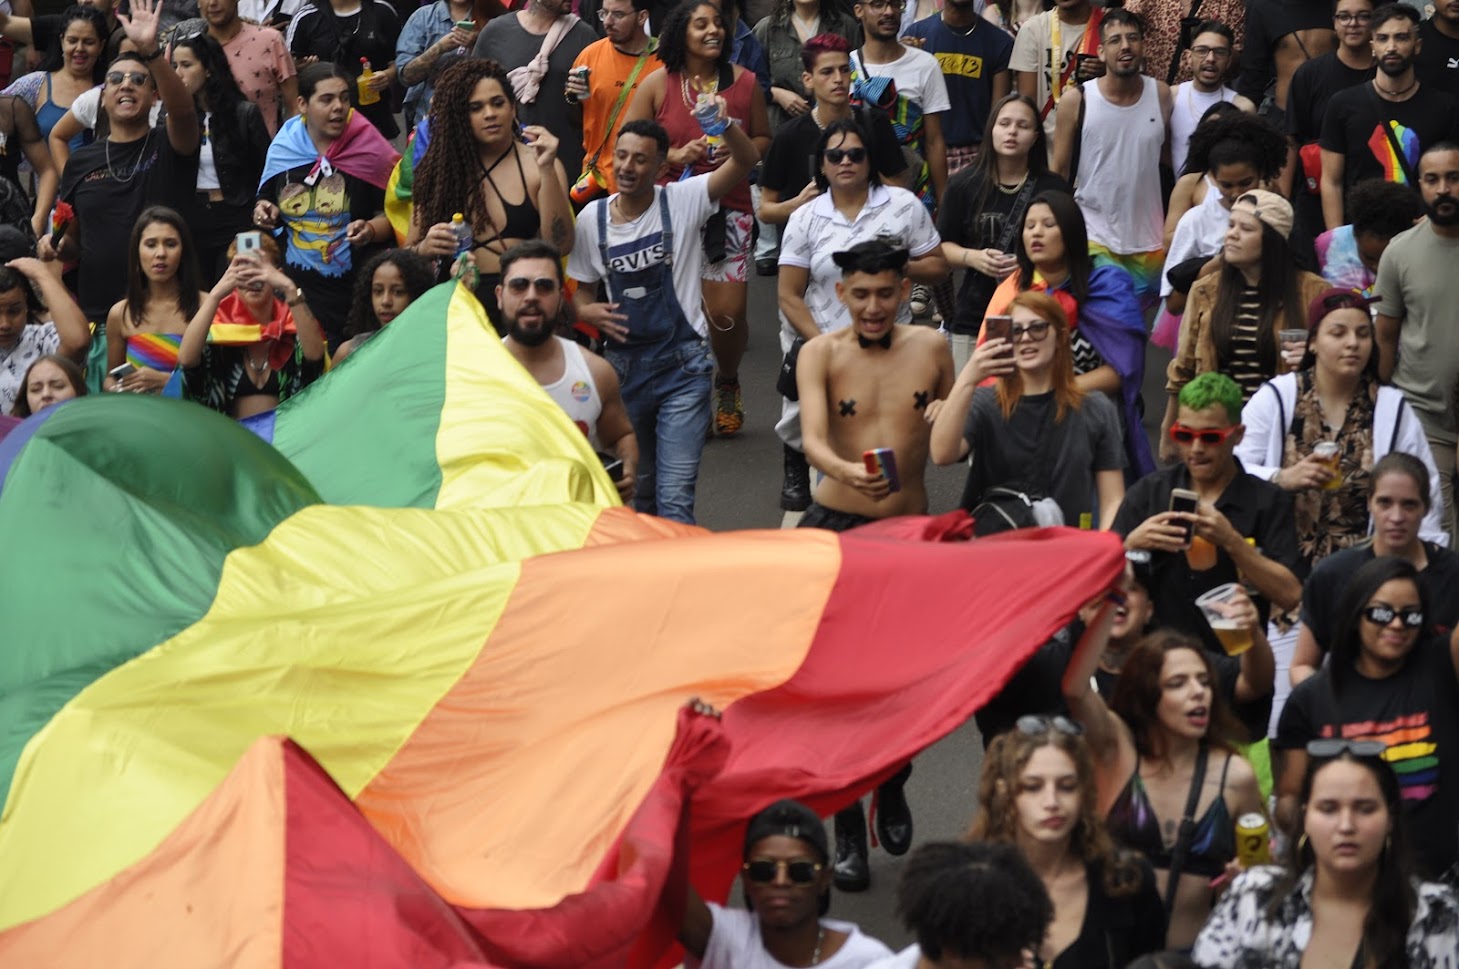 Prefeitura ignora maioria das solicitações para realização da Parada LGBT de Maringá